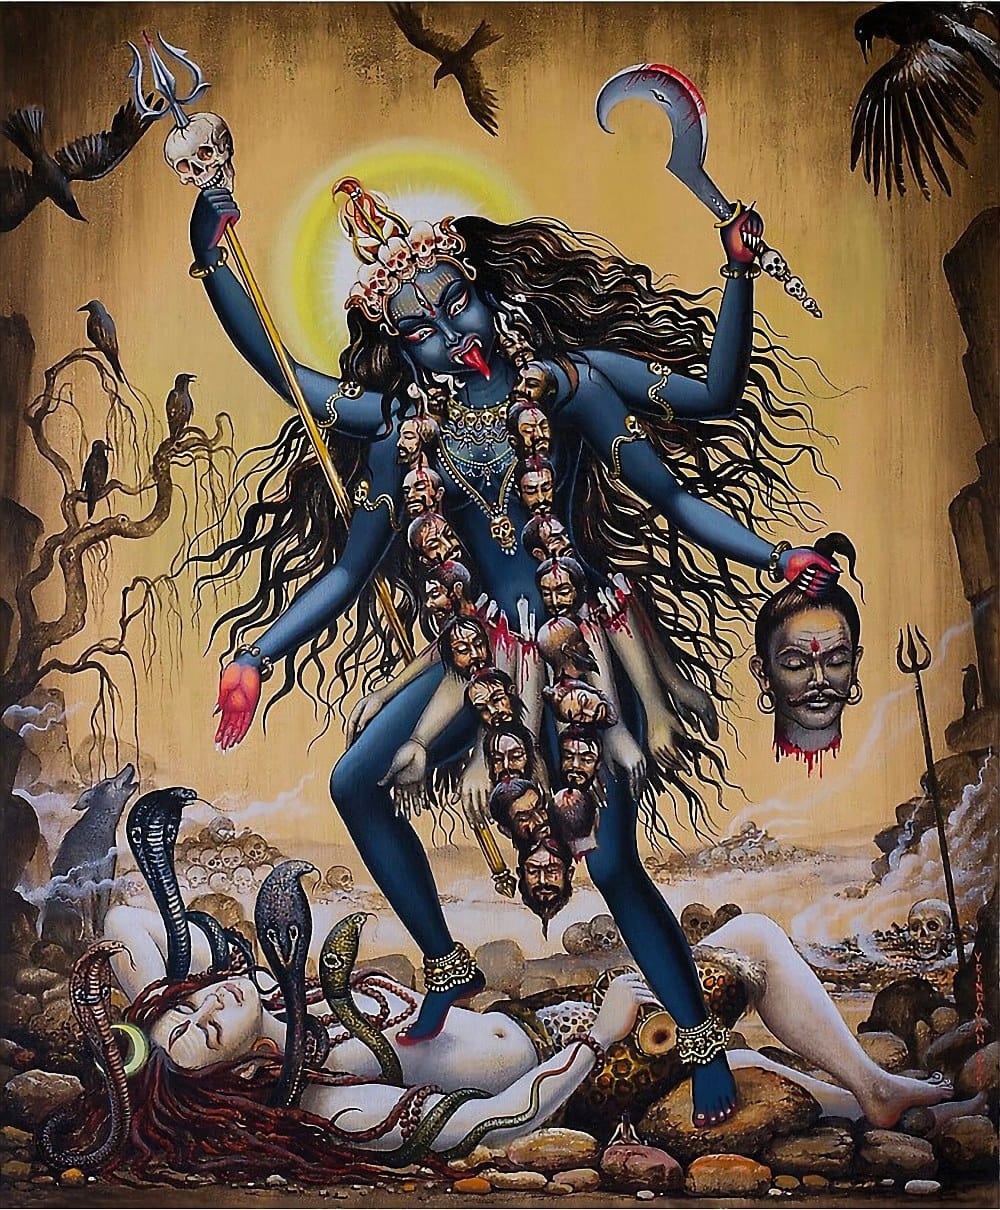 Jai Maa Kali-image of maa kali-kali devi images-download kali image-cremation god-goddess kali-stumbit spirituality